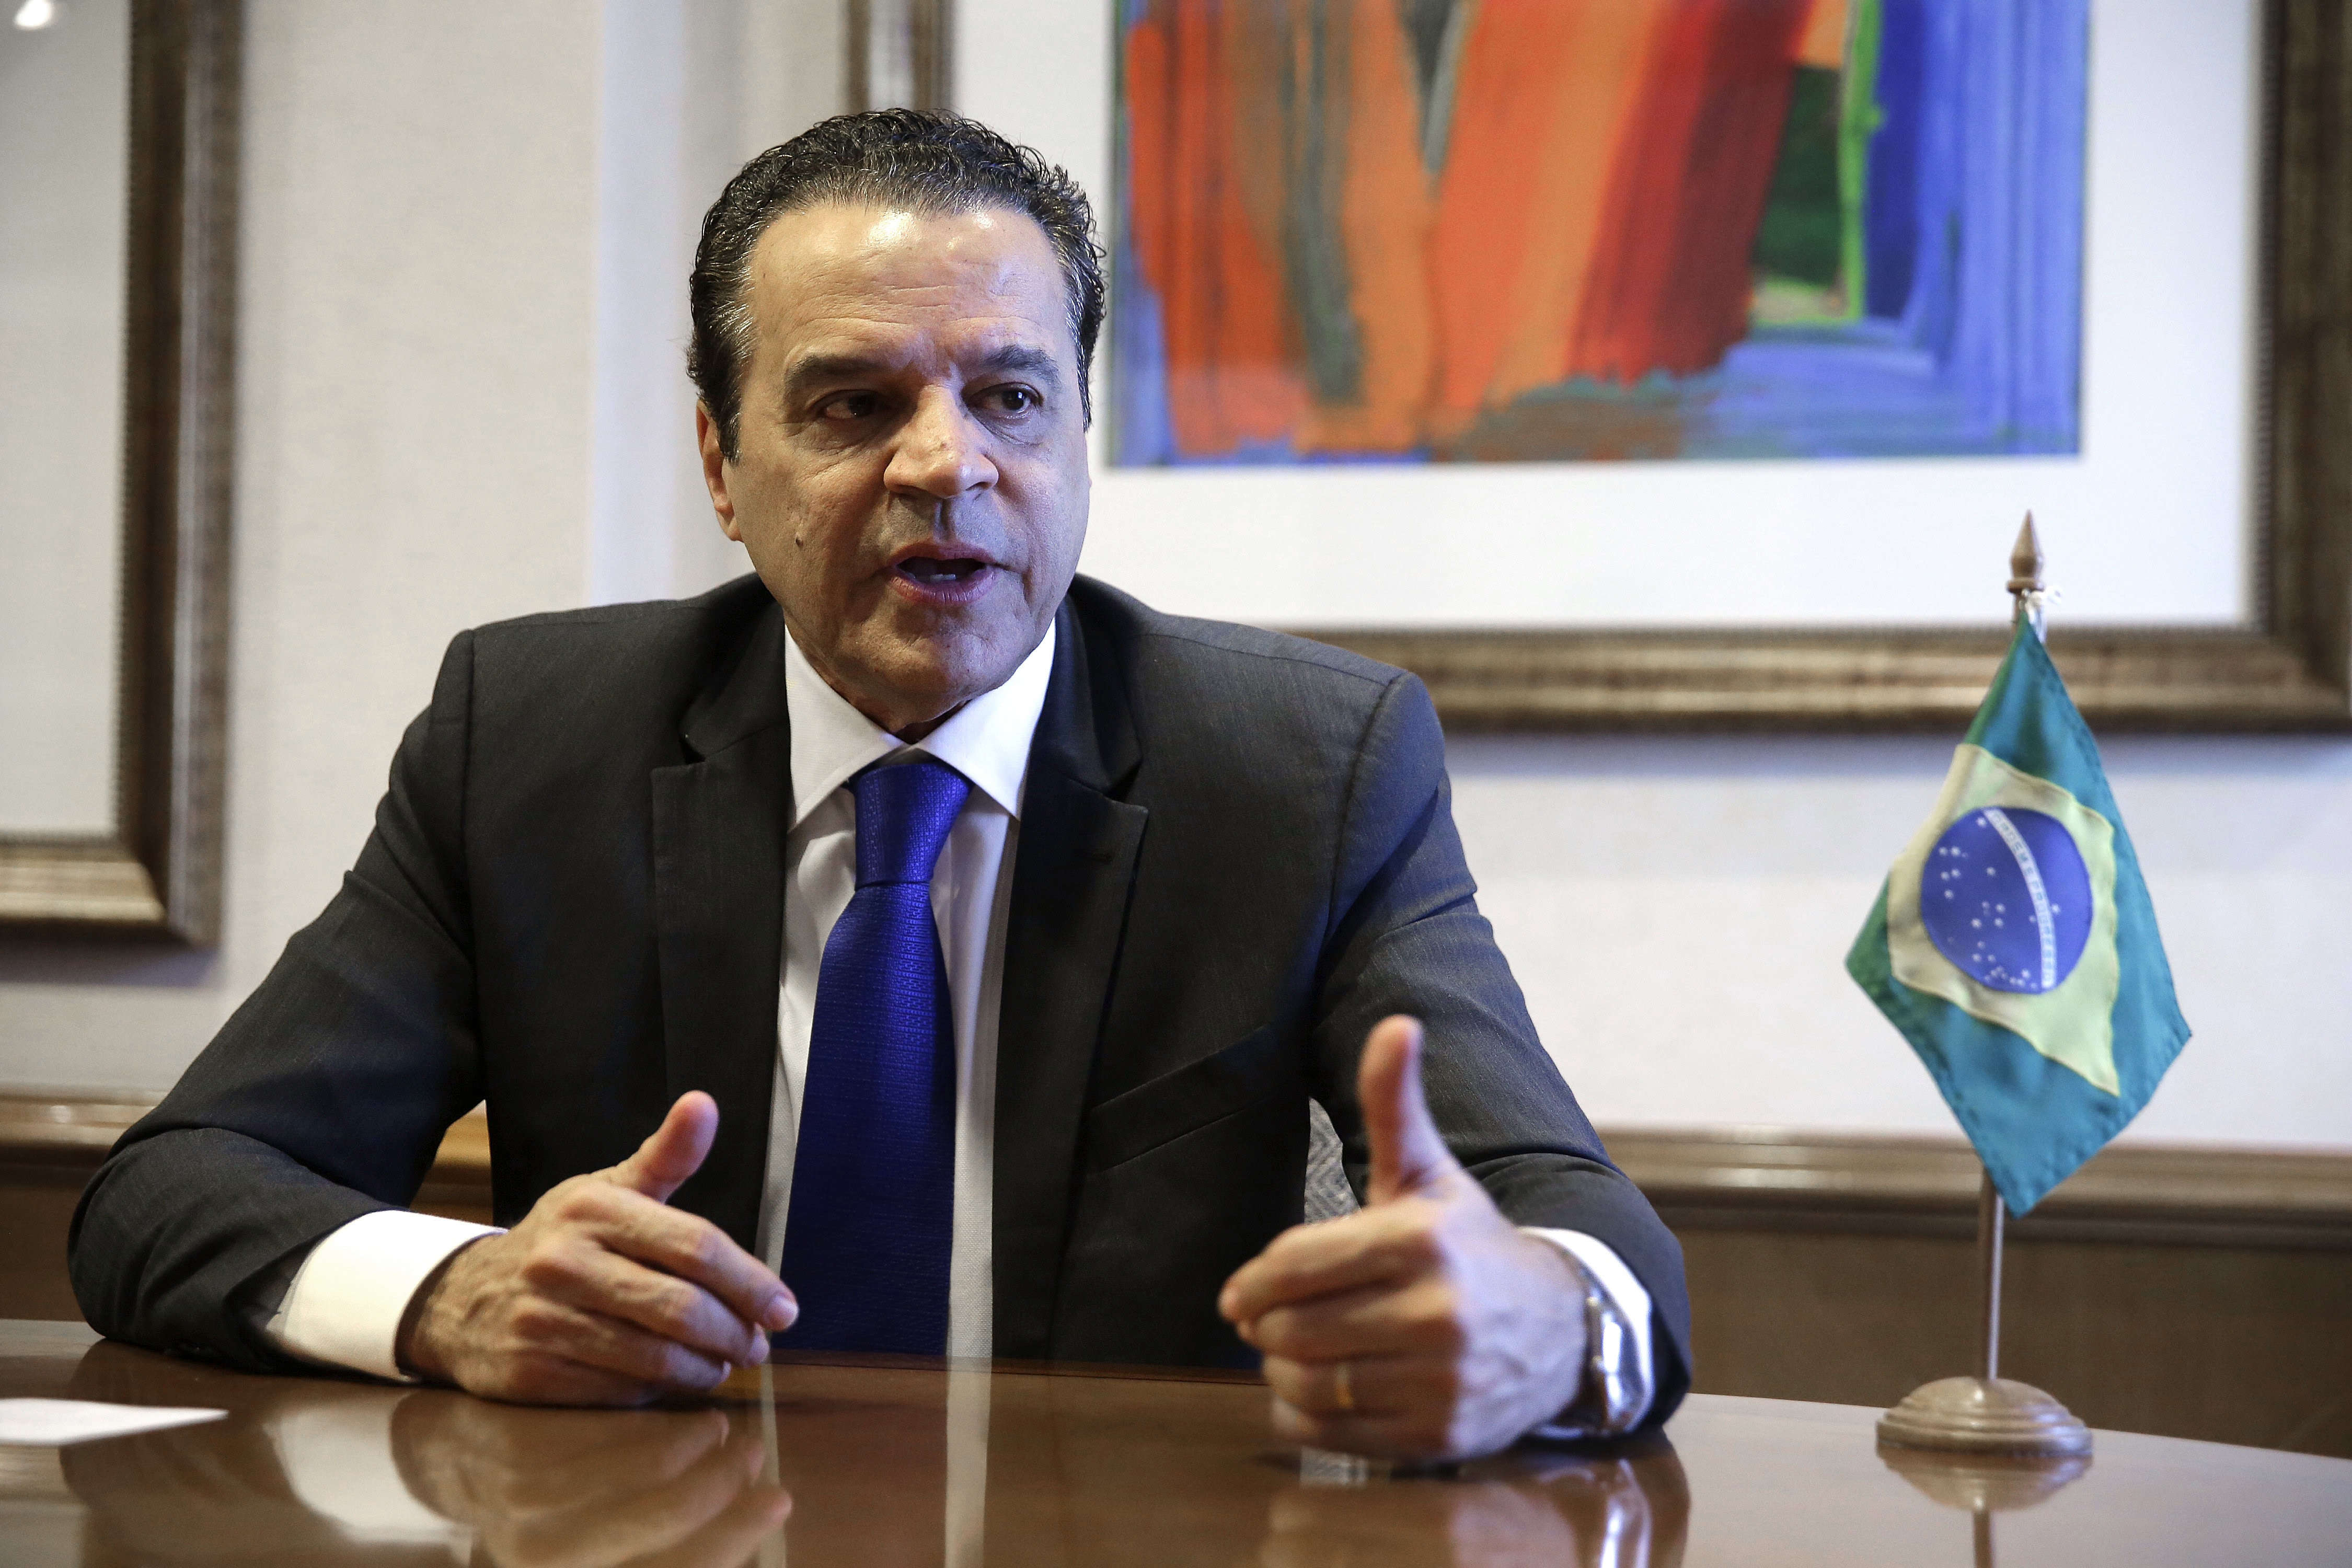 Dimite ministro de Turismo de Brasil ligado a corrupción